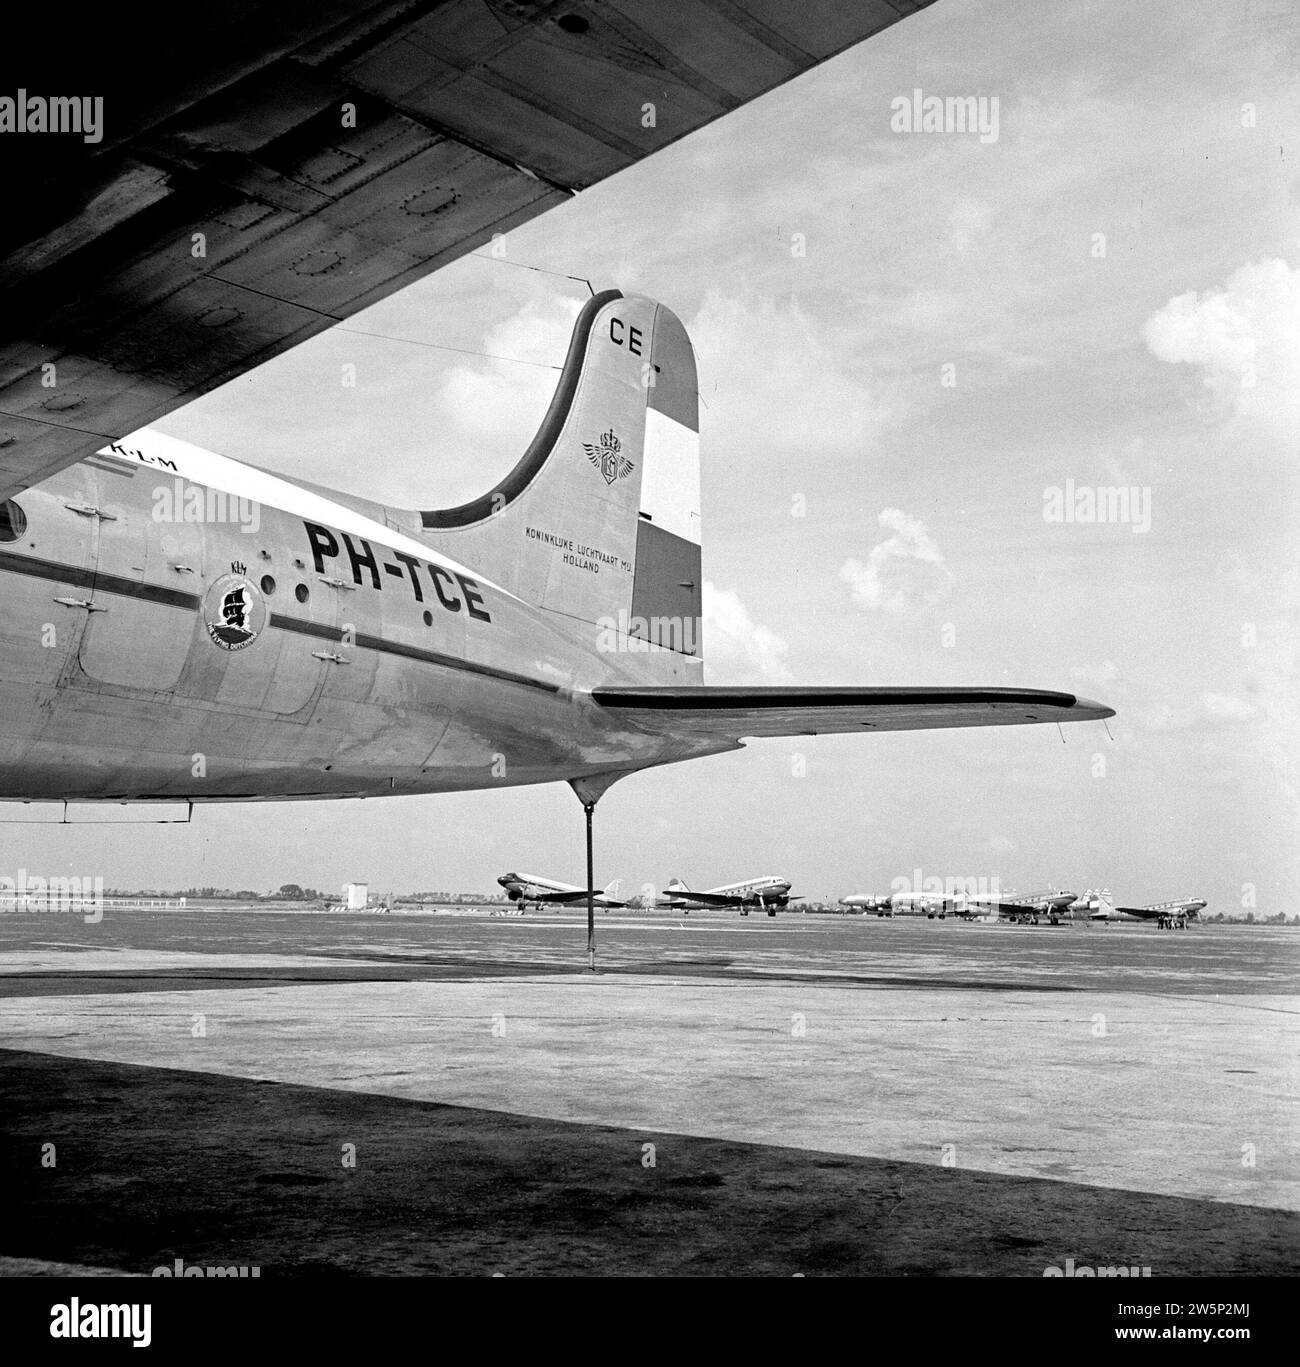 Der Douglas DC-4 Edam im KLM-House-Stil und mit dem Flying Dutchman-Logo in der Mitte der Rumpfrückseite und dem Heck in der niederländischen Tricolor am Flughafen Schiphol CA. August 1951 Stockfoto